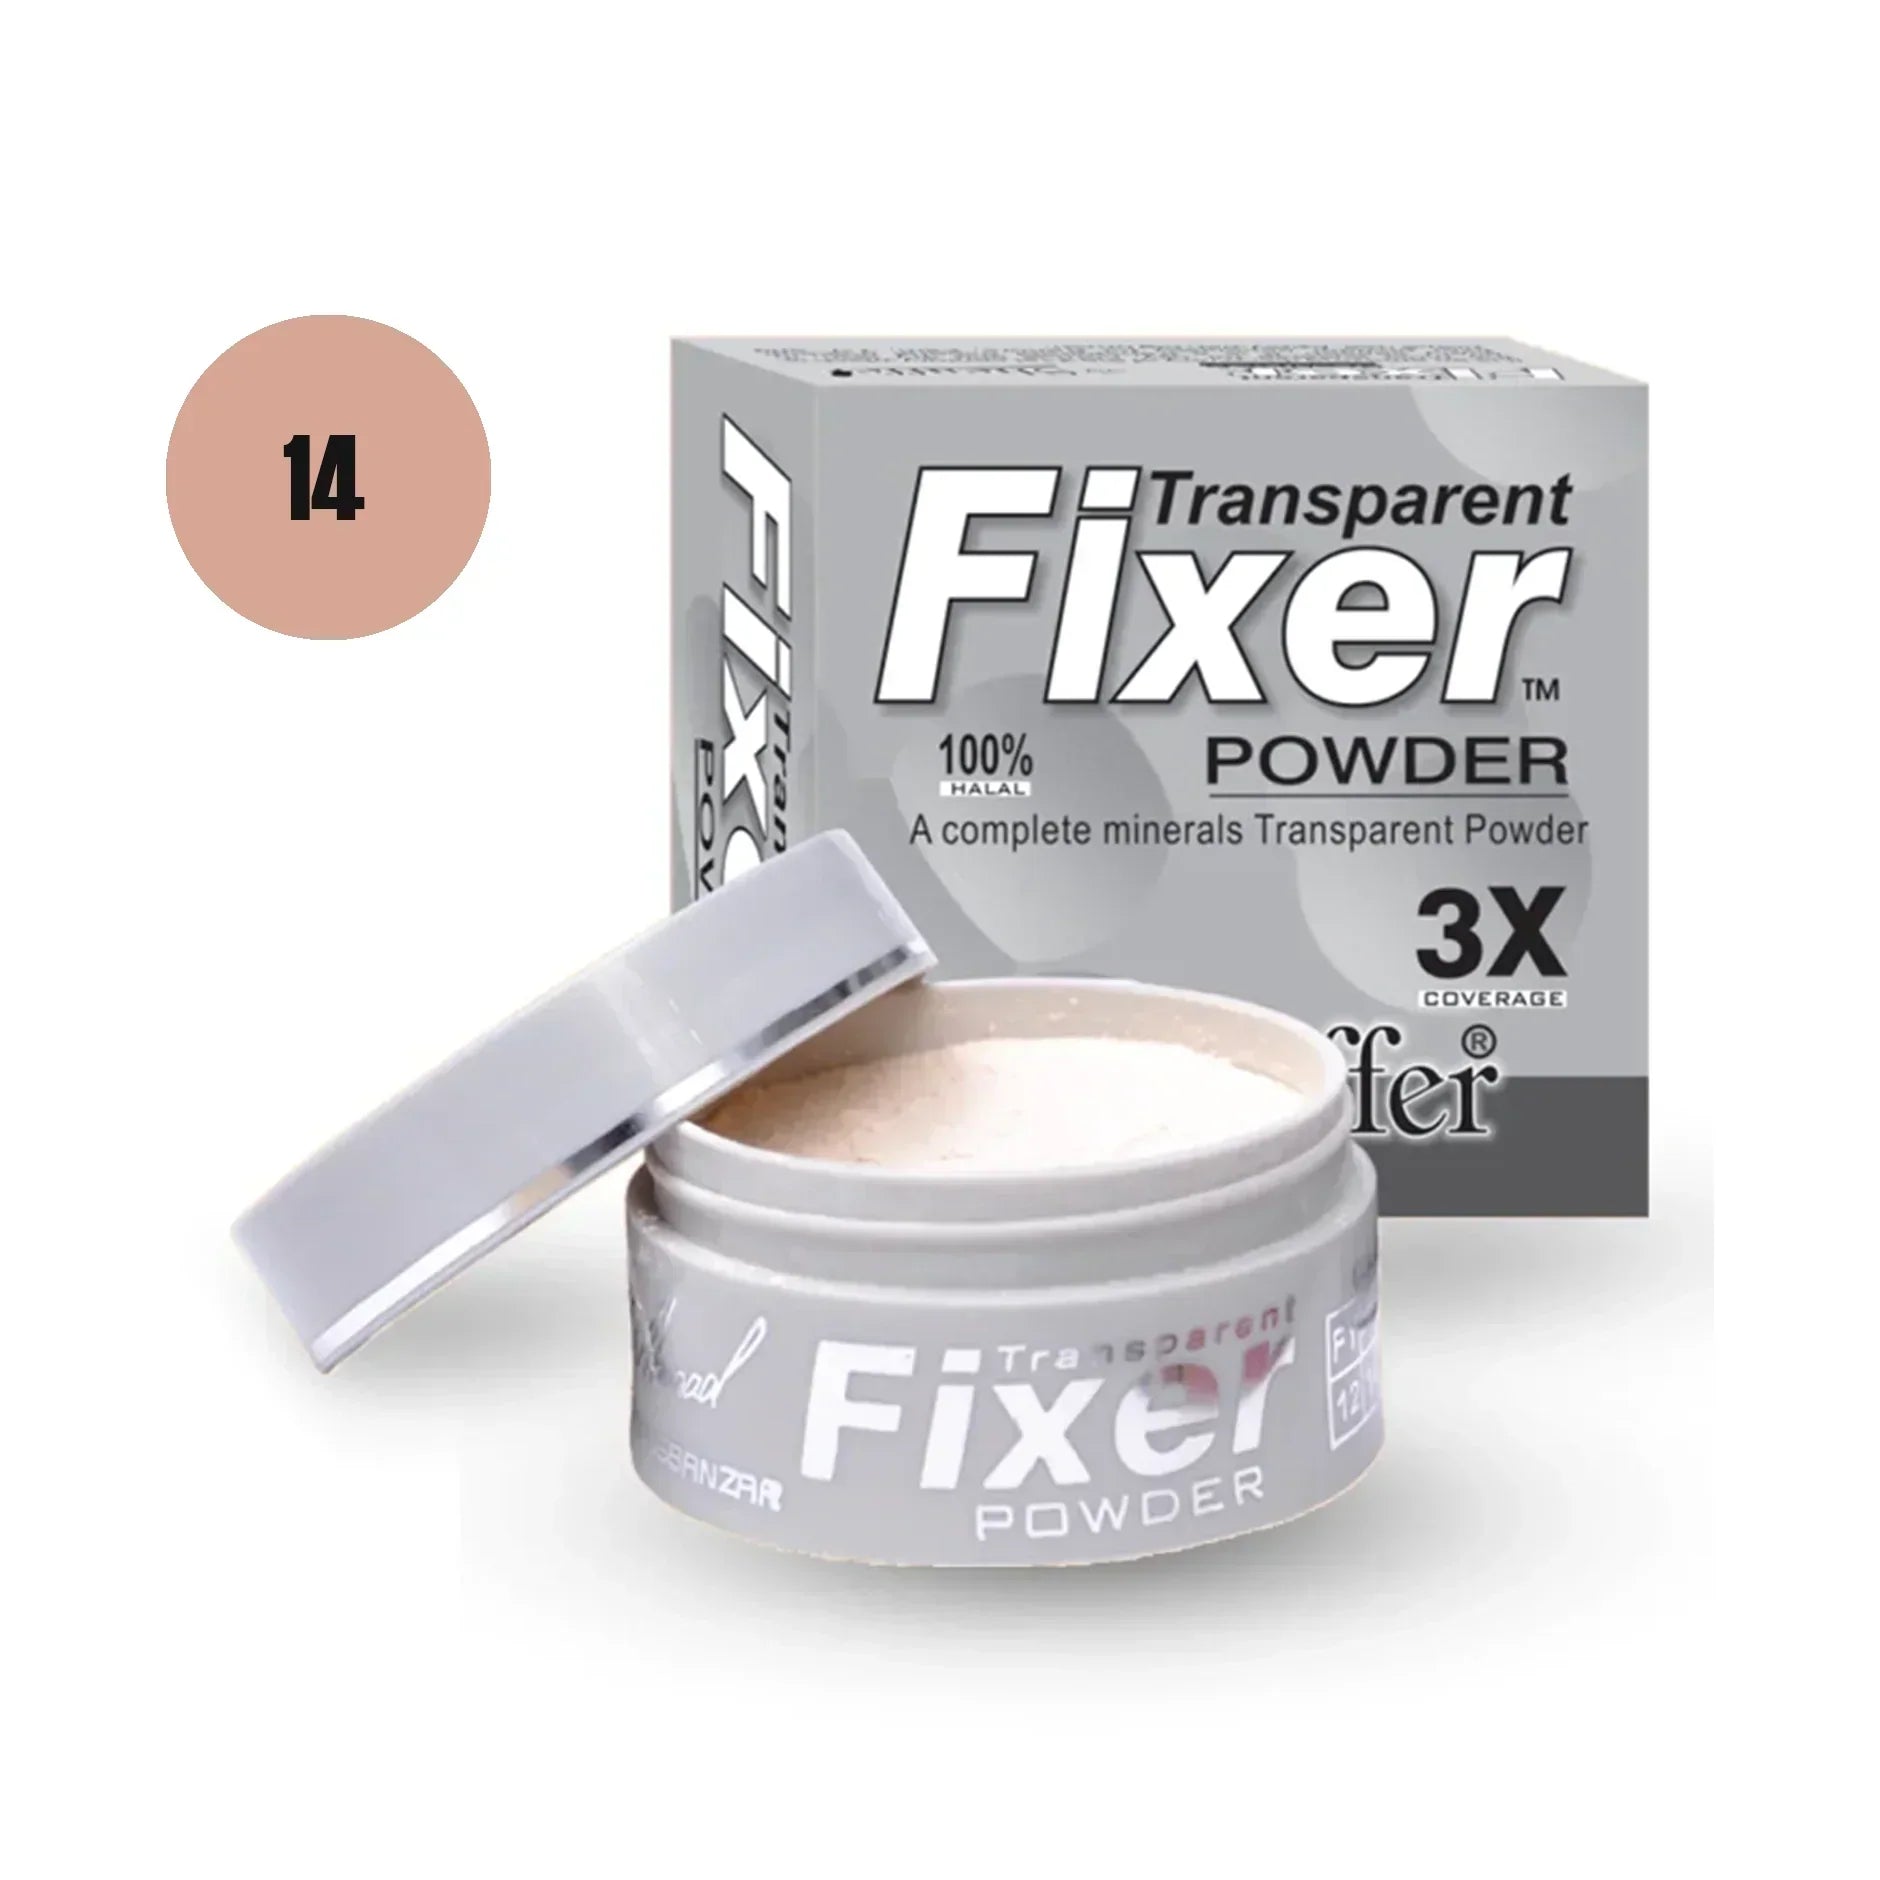 Sheaffer Transparent Fixer Powder Shade No 12 - Retailershop - Online Shopping Center